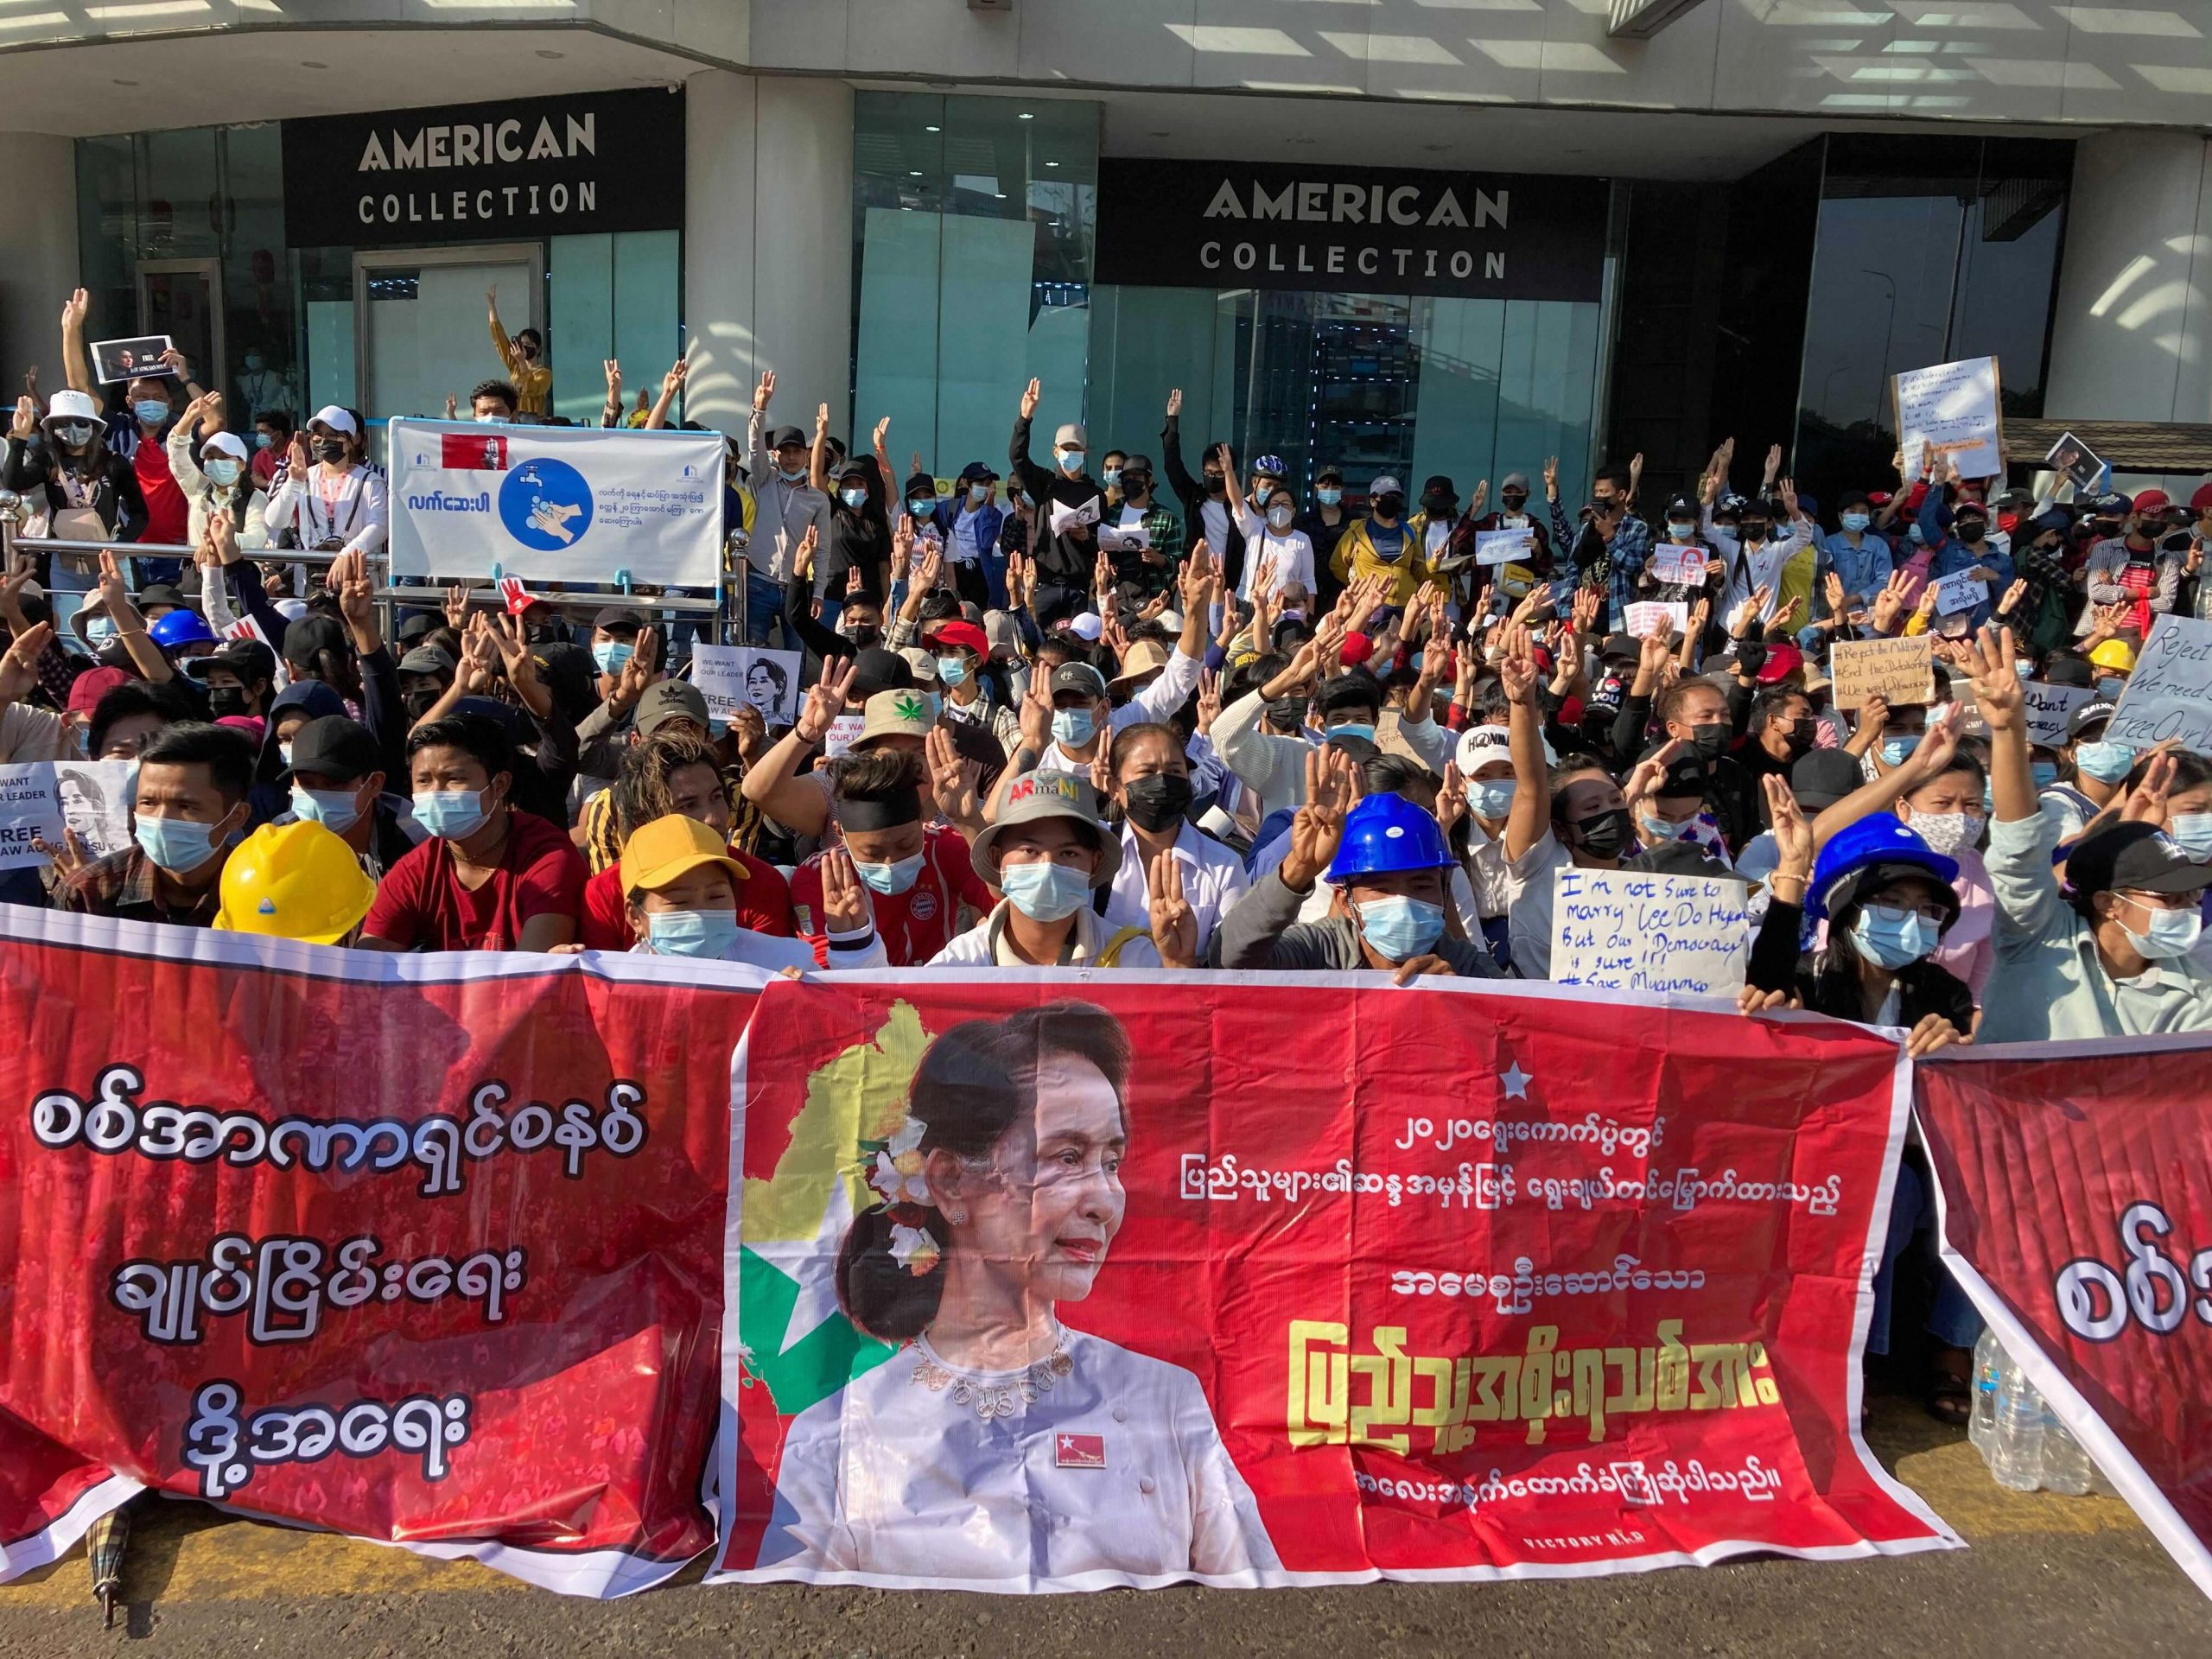 Myanmar junta leader seeks Thai PM help to restore democracy after coup